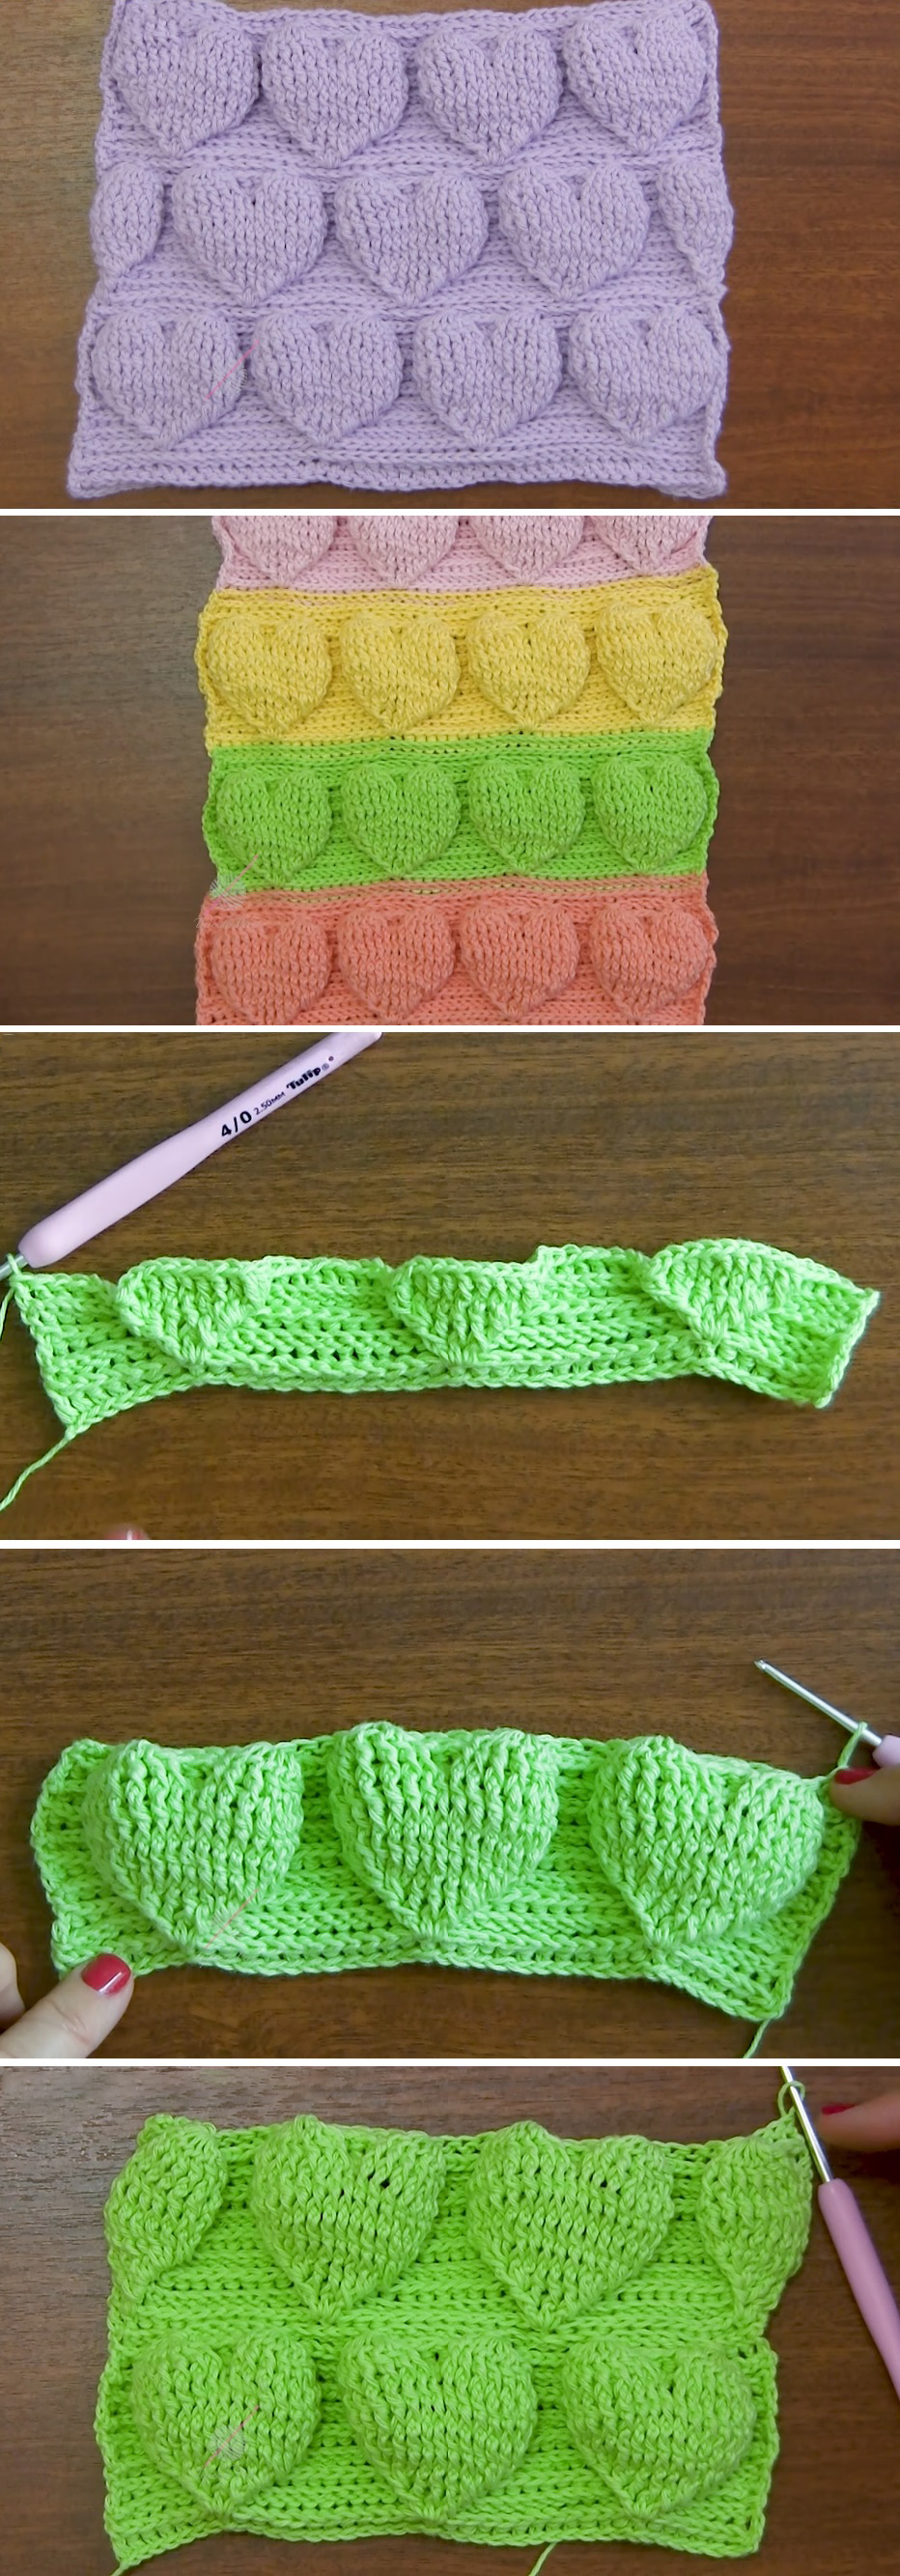 Crochet 3D Heart Tutorial